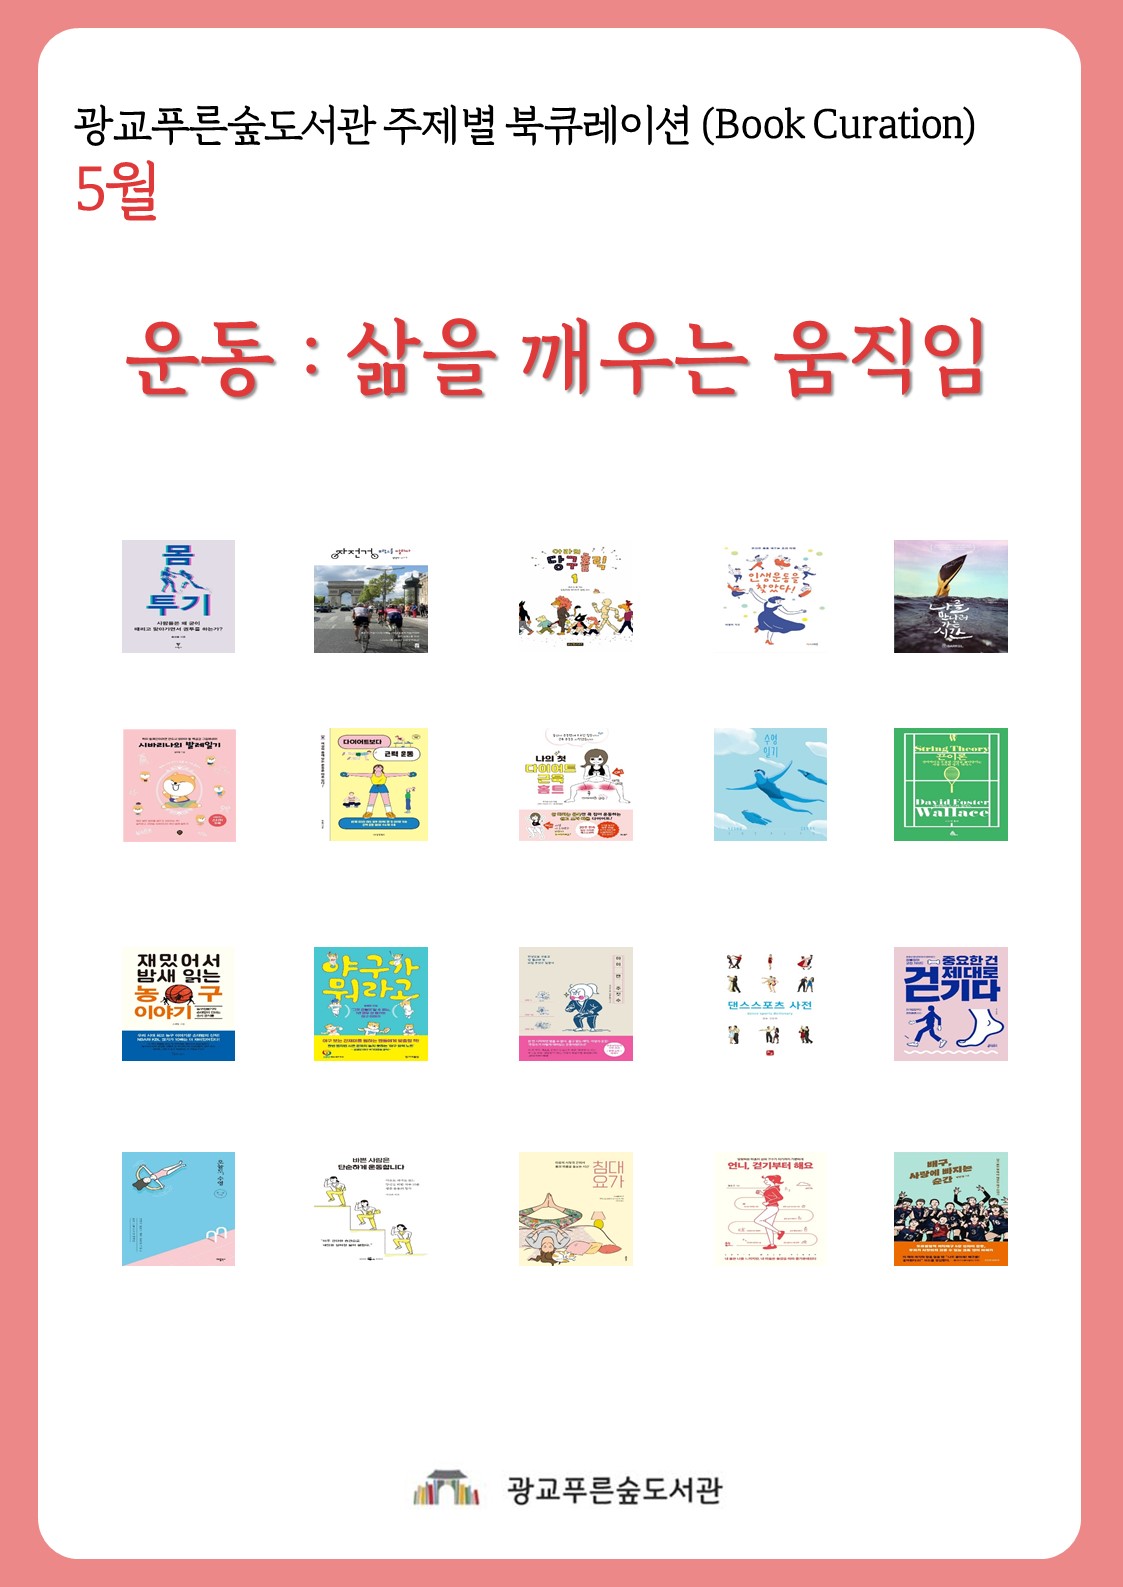 광교푸른숲도서관주제별북큐레이션안내문(5월).jpg